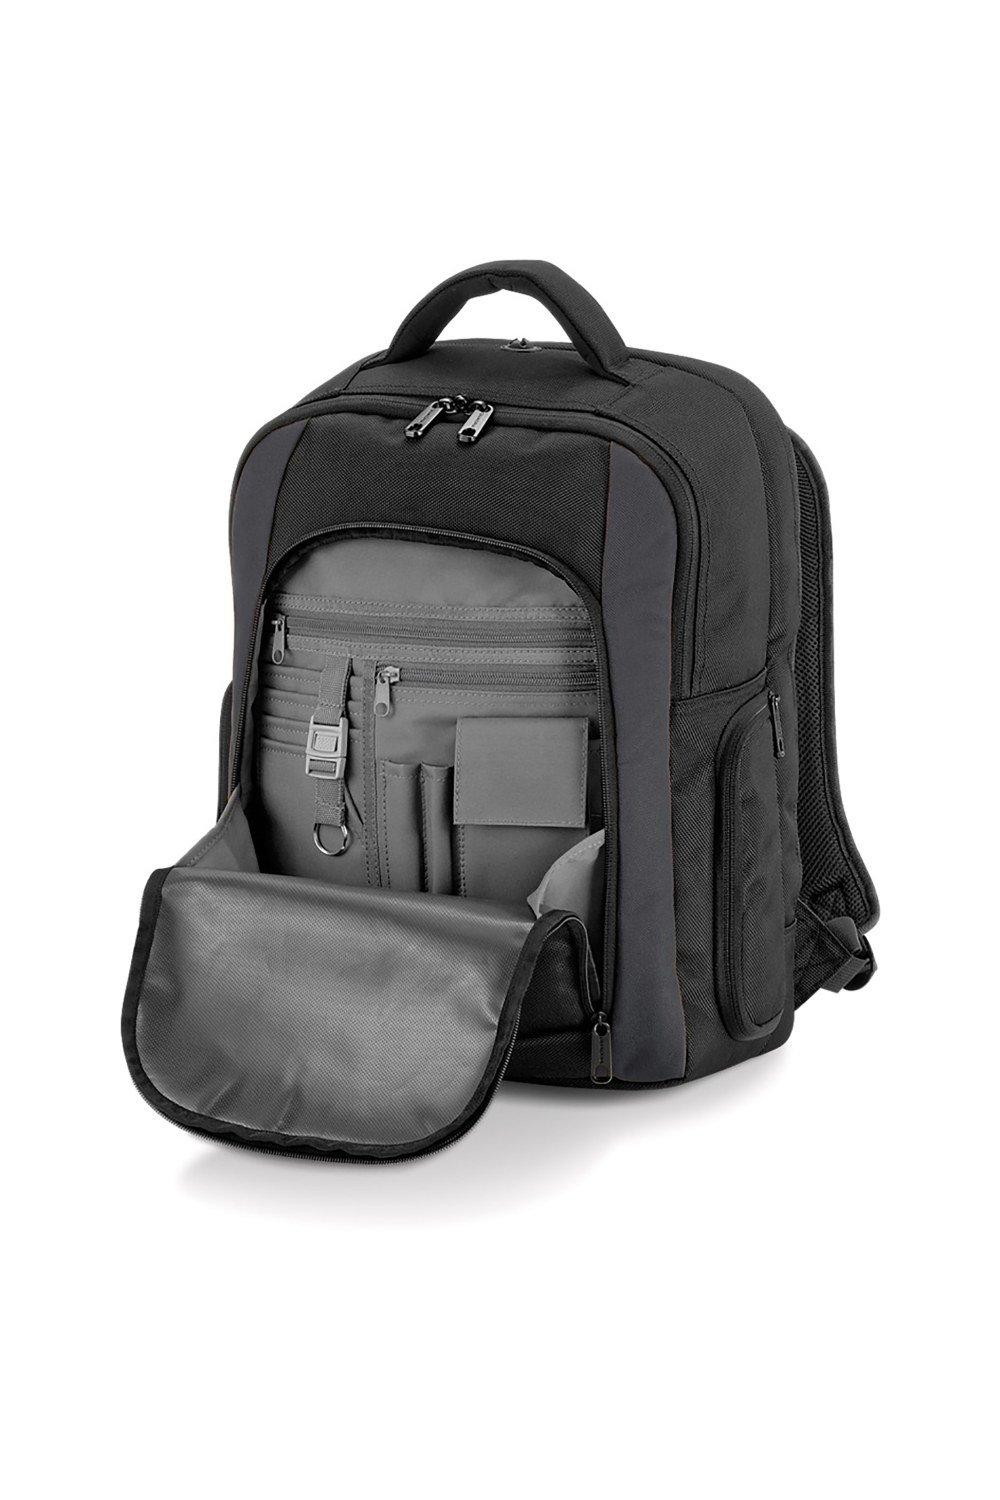 Рюкзак для ноутбука из вольфрама - 23 литра Quadra, черный мате rosamonte despalada 500 г